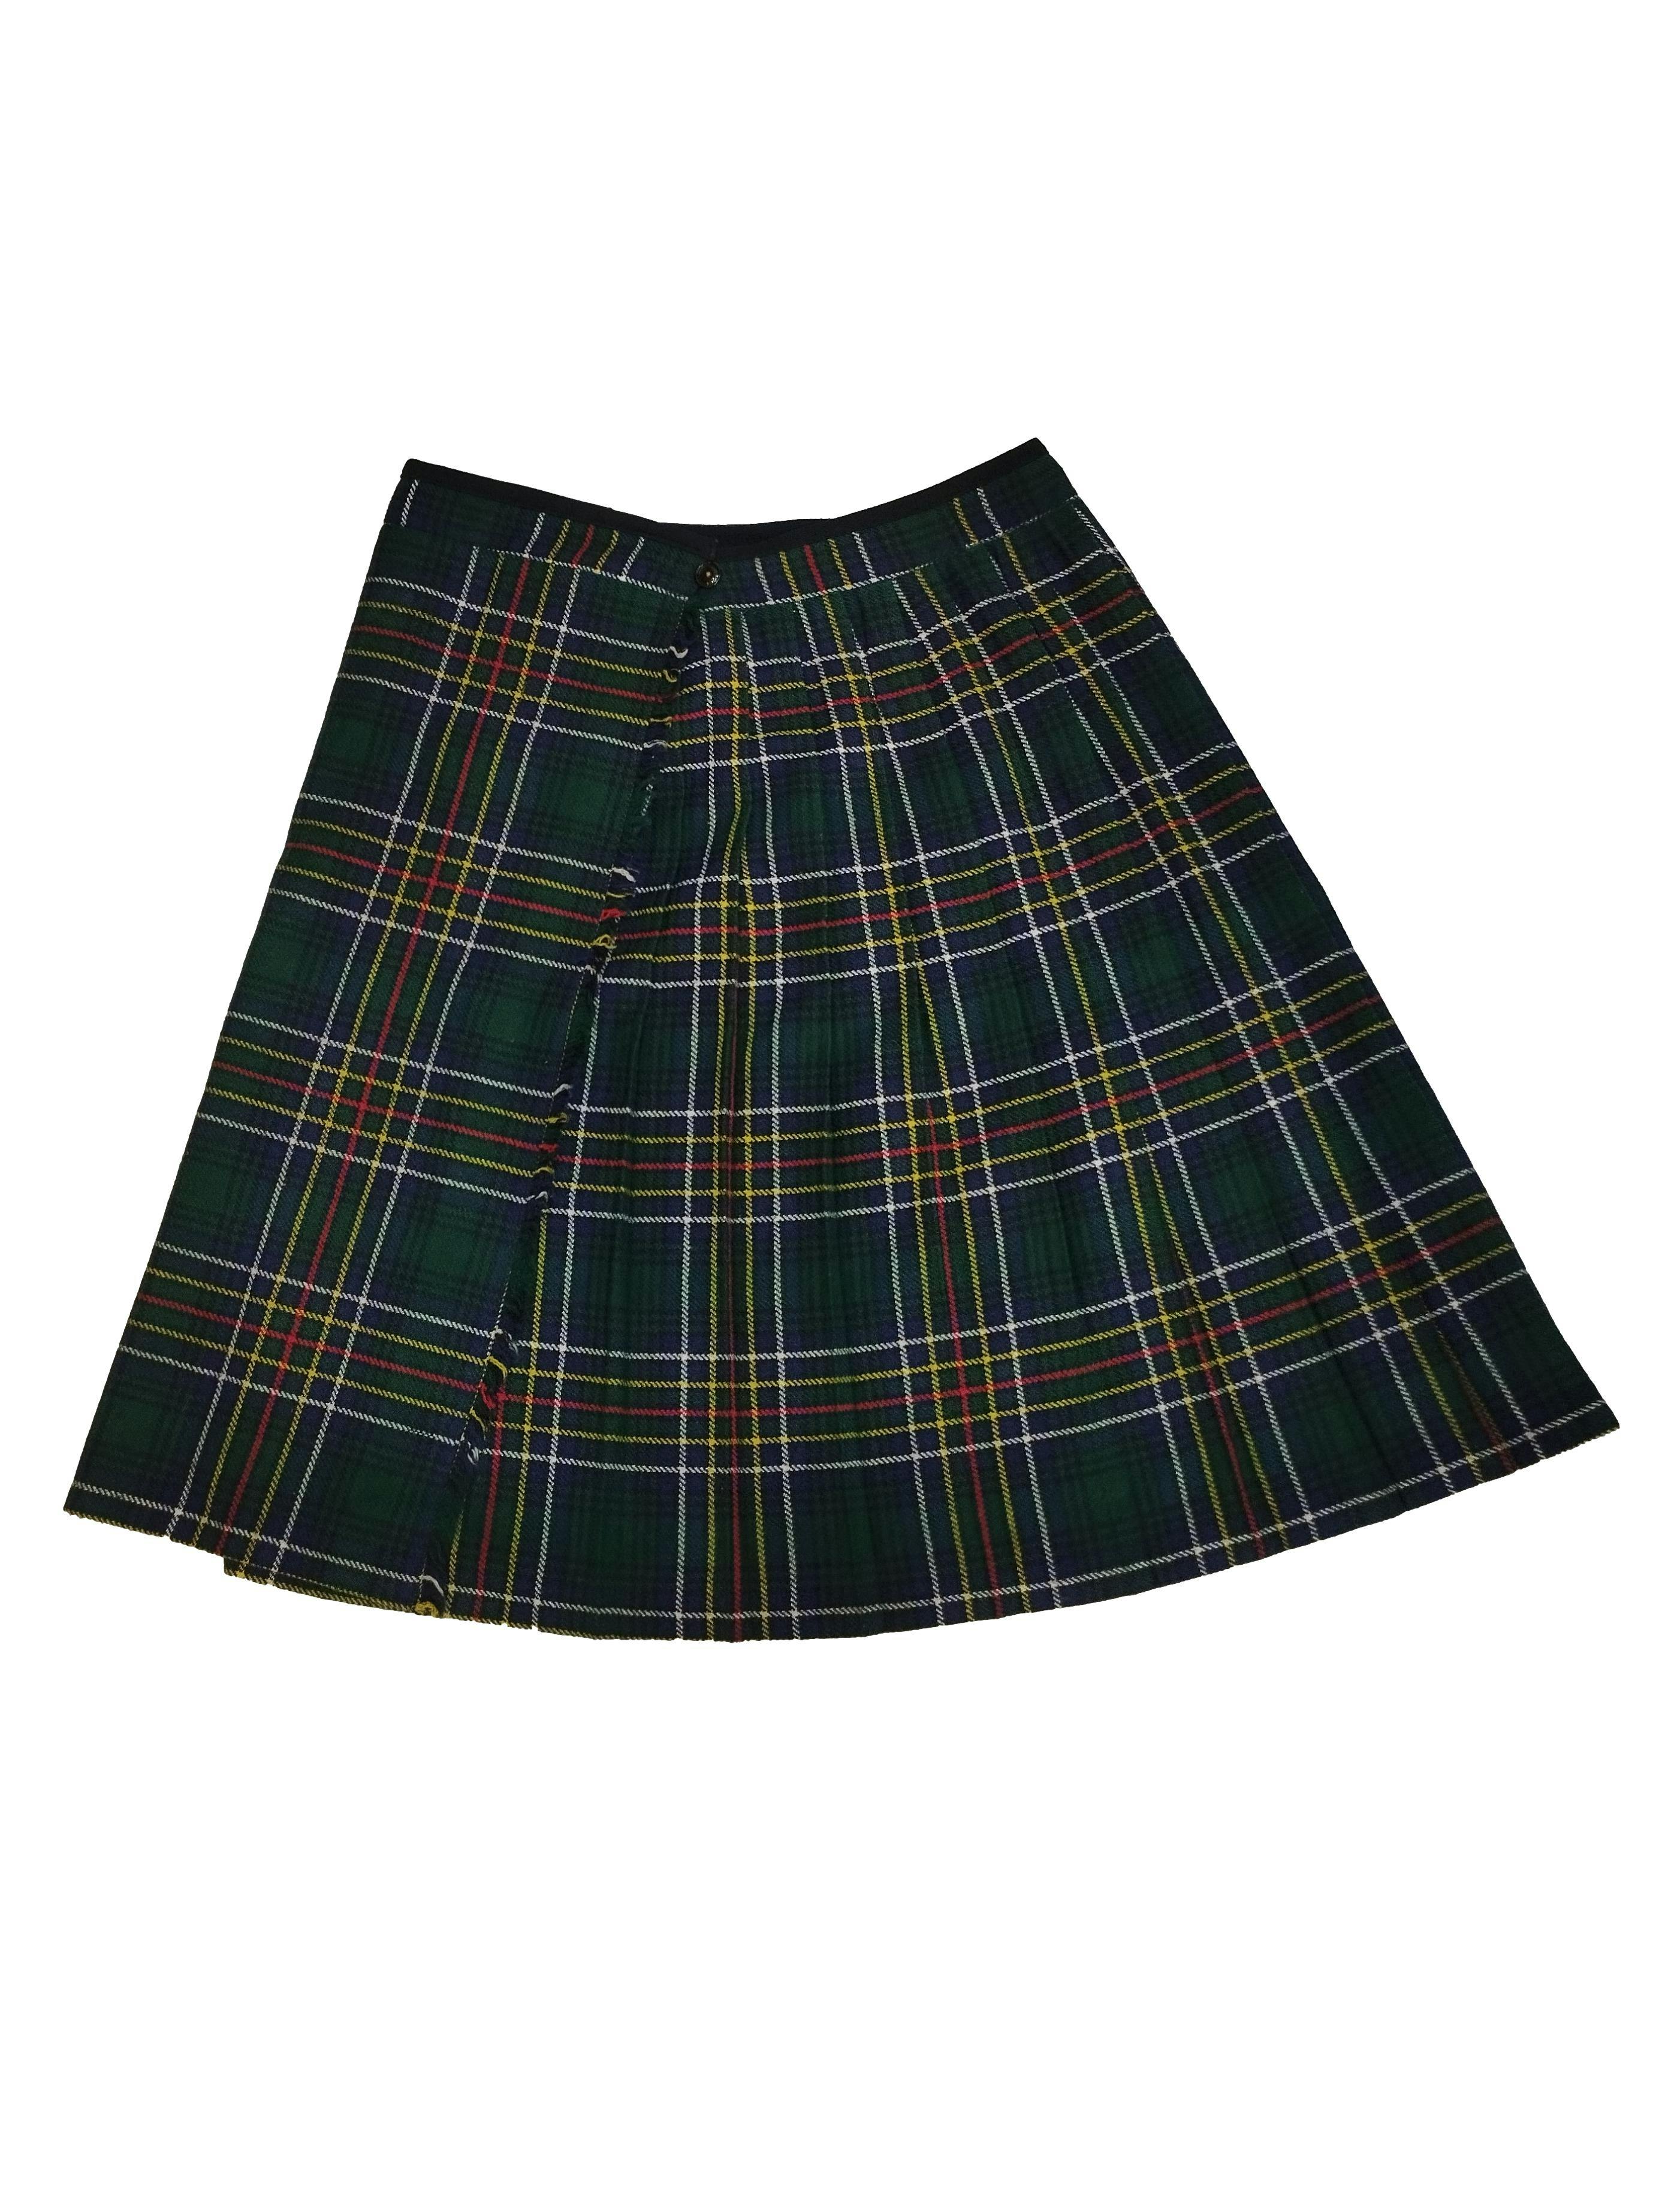 Falda envolvente estilo escocés, tableada en tonos verde azul, amarilo, rojo, broches y botón en la cintura. Cintura: 80 cm, Largo: 64 cm